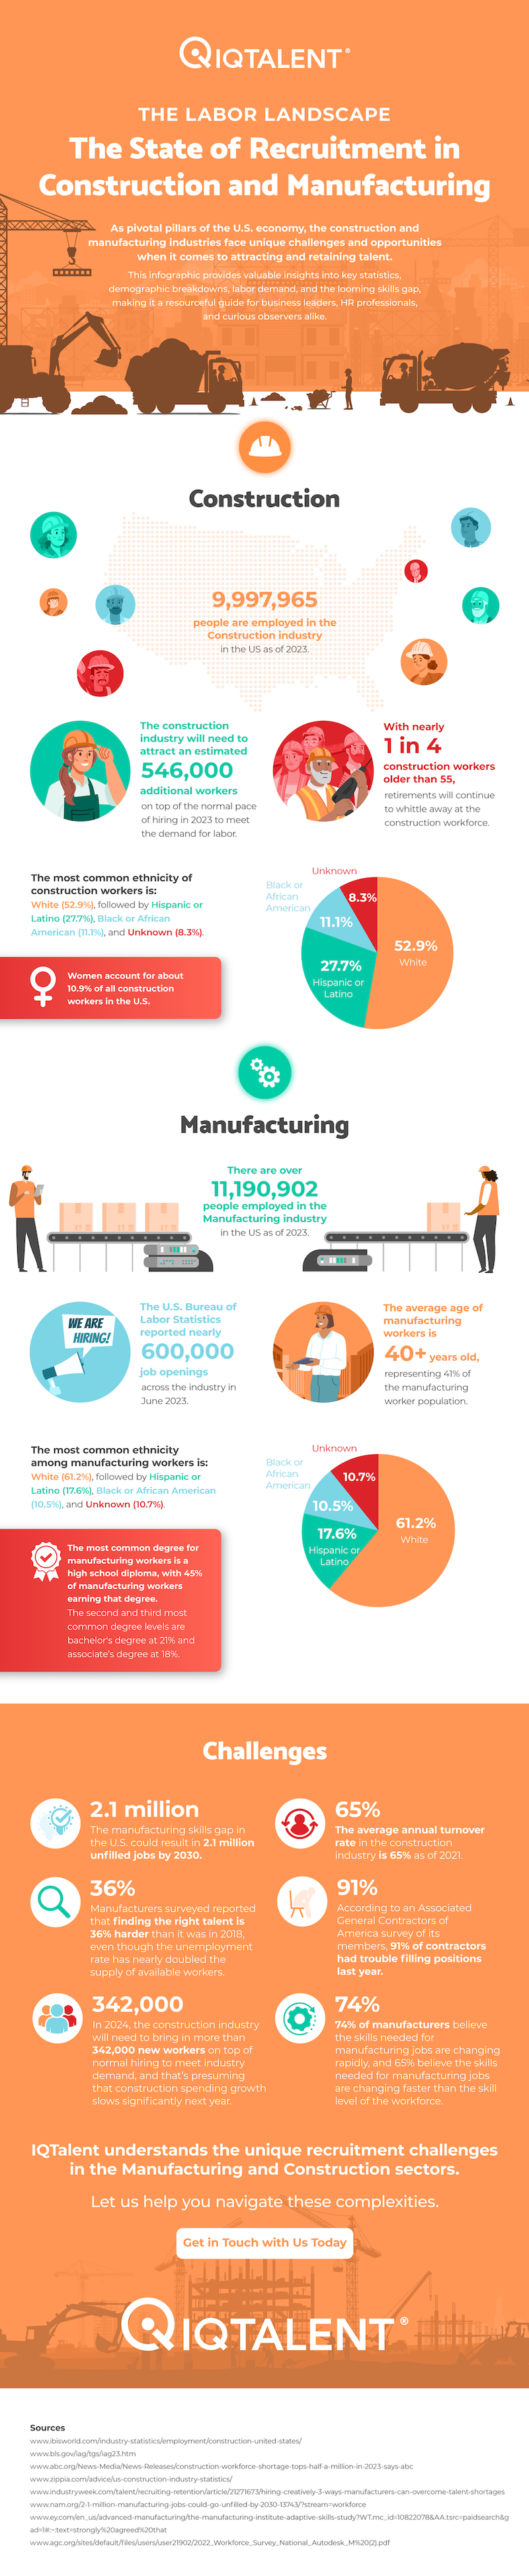 IQTalent-Labor-Landscape-Construction-Manufacturing-Infographic